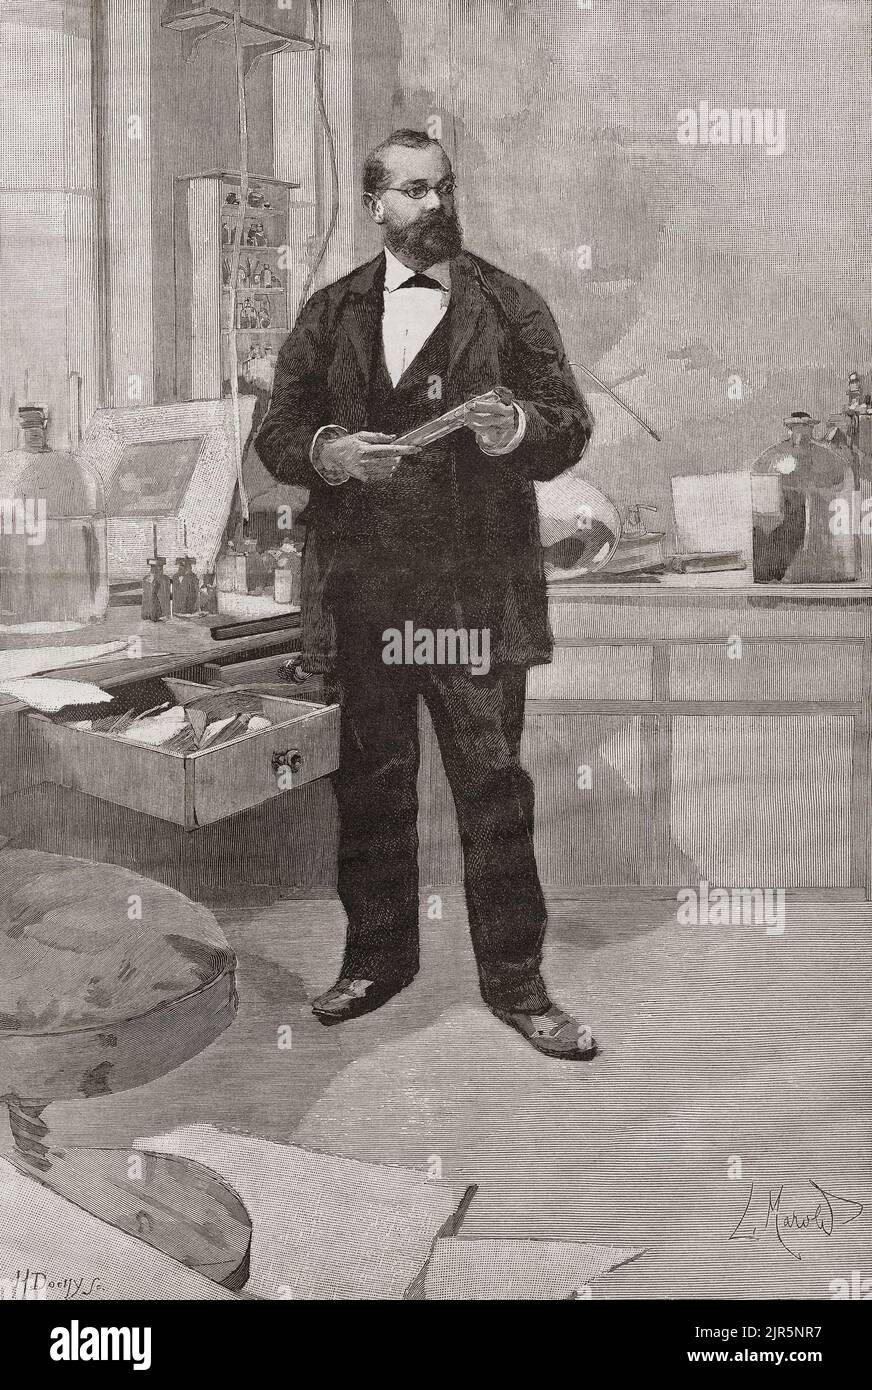 Heinrich Hermann Robert Koch, 1843 – 1910. Médecin et microbiologiste allemand. Robert Koch a reçu le prix Nobel de physiologie ou médecine en 1905. Vu dans son laboratoire dans cette illustration du 19th siècle. Banque D'Images